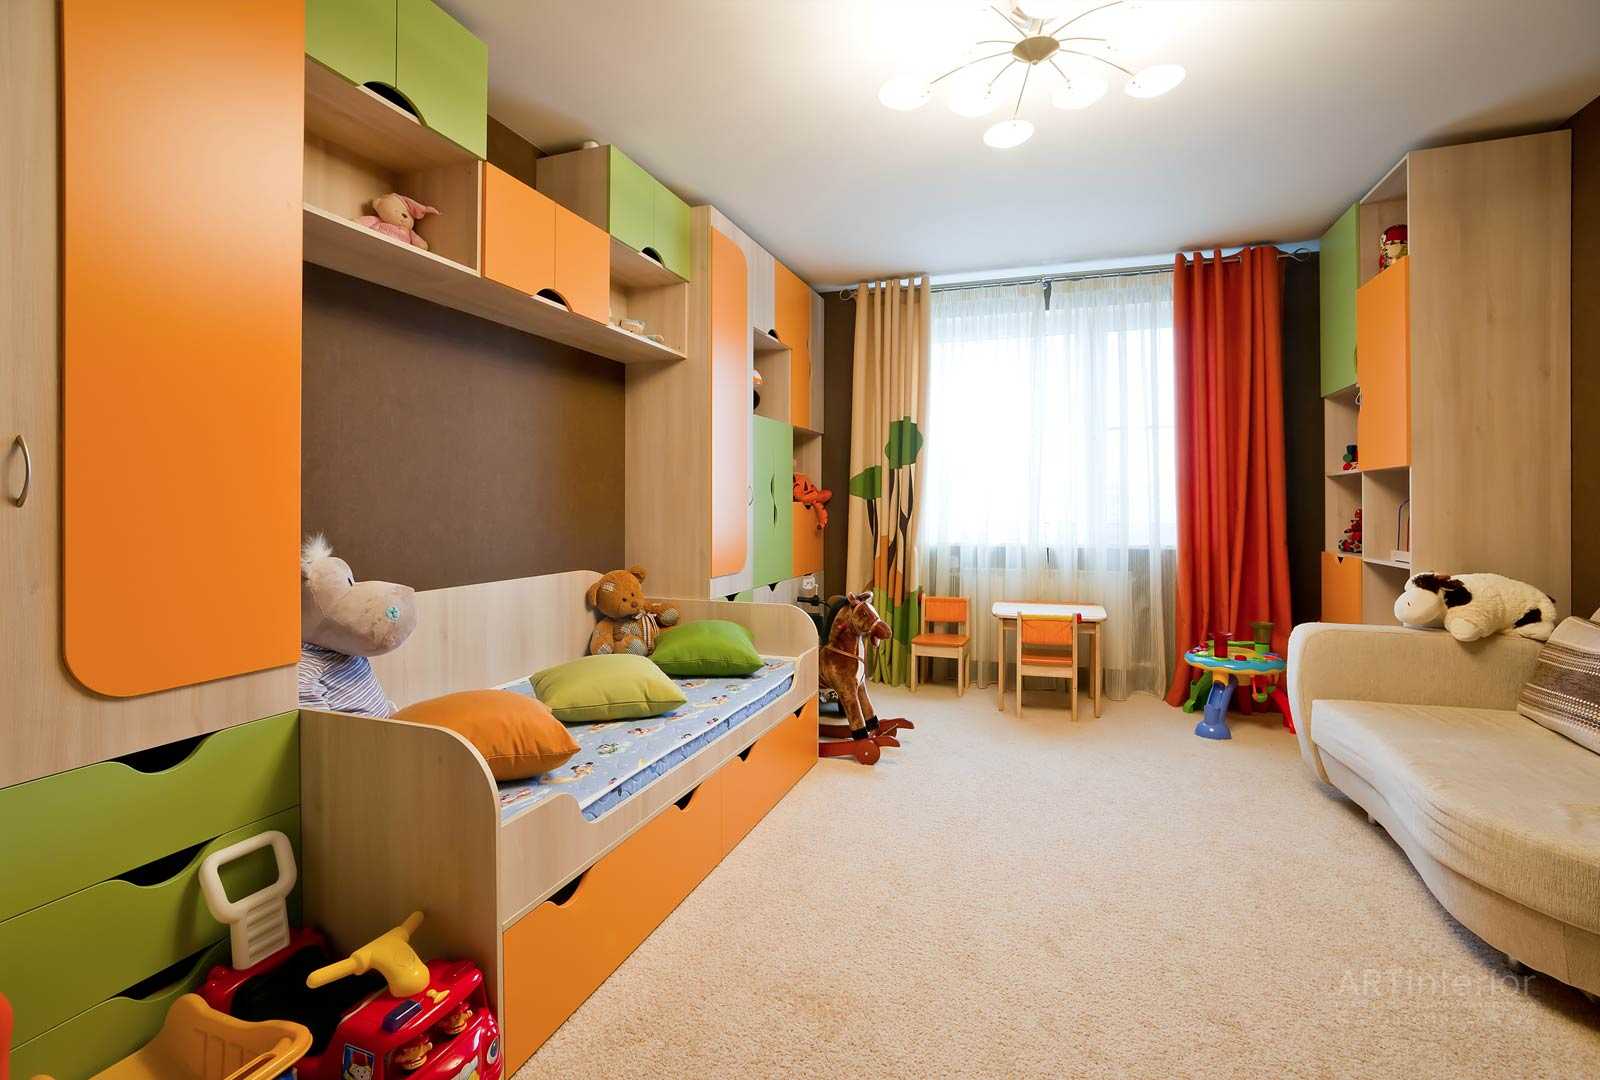 Как сделать ремонт детской комнаты своими руками: для мальчики и девочки и двоих детей- идеи дизайна +видео